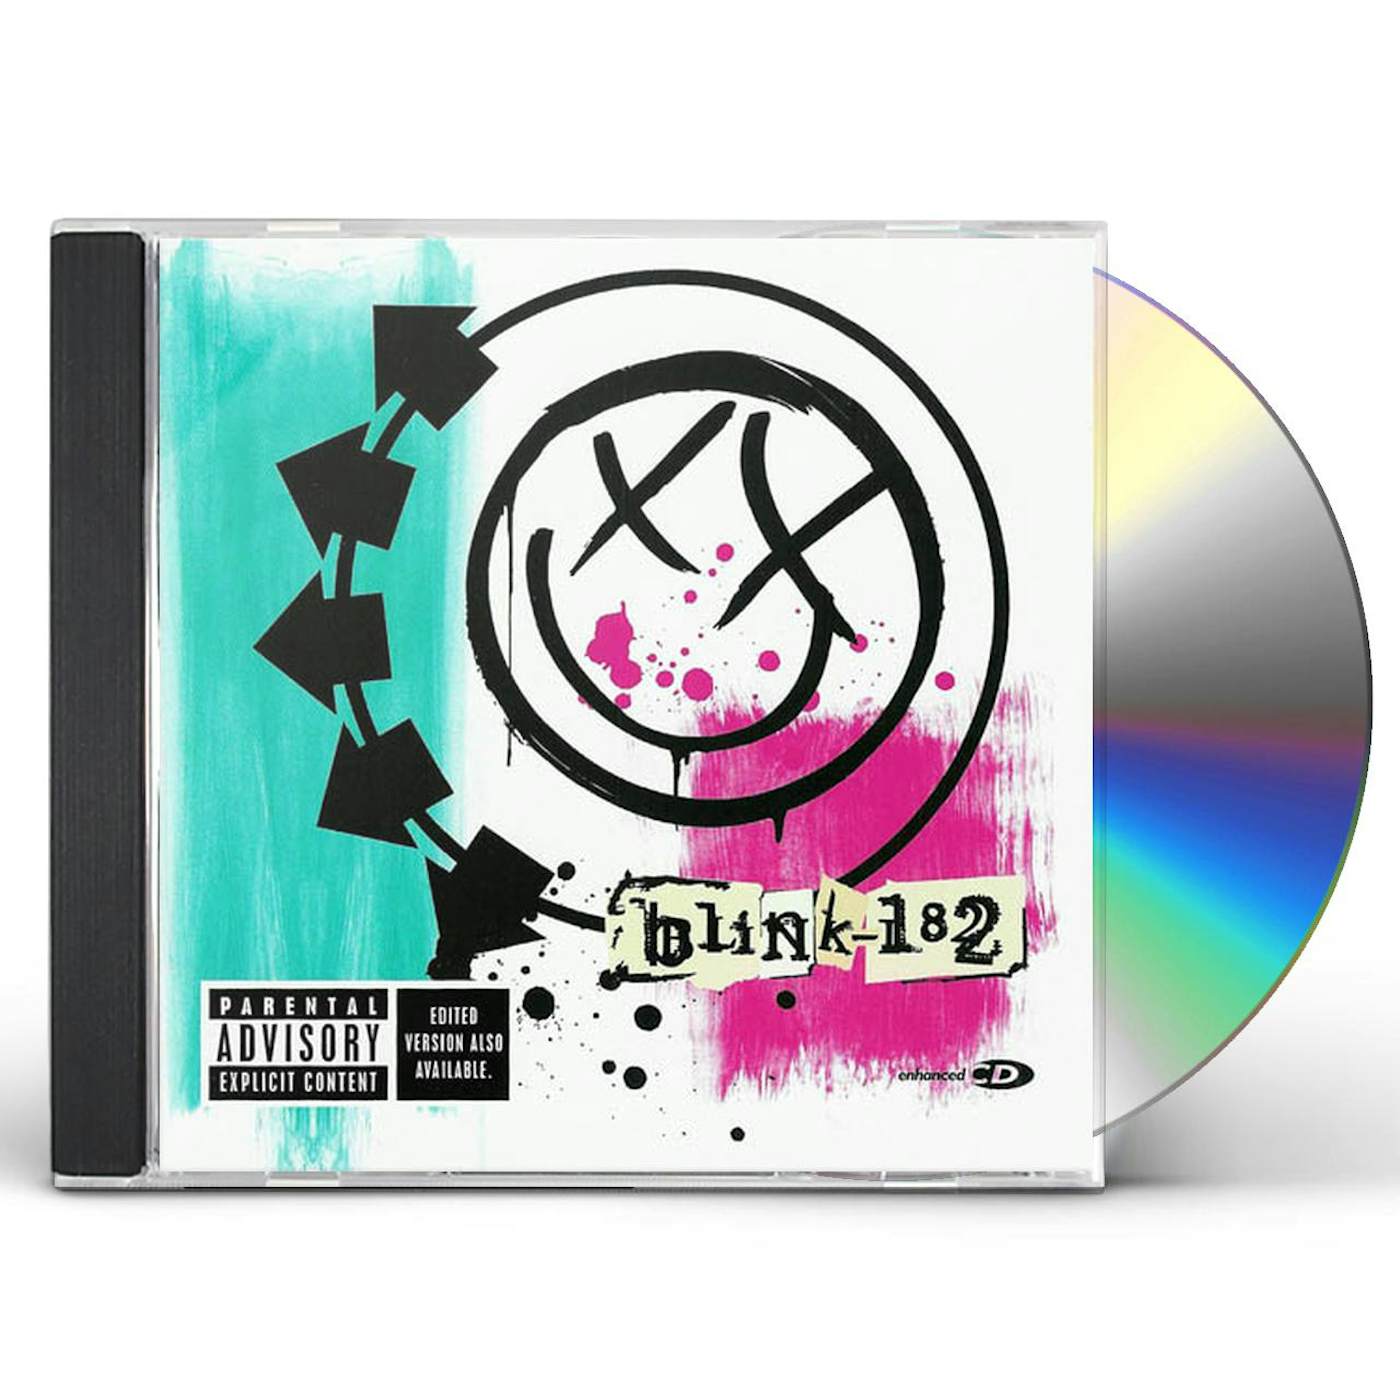 BLINK-182 CD